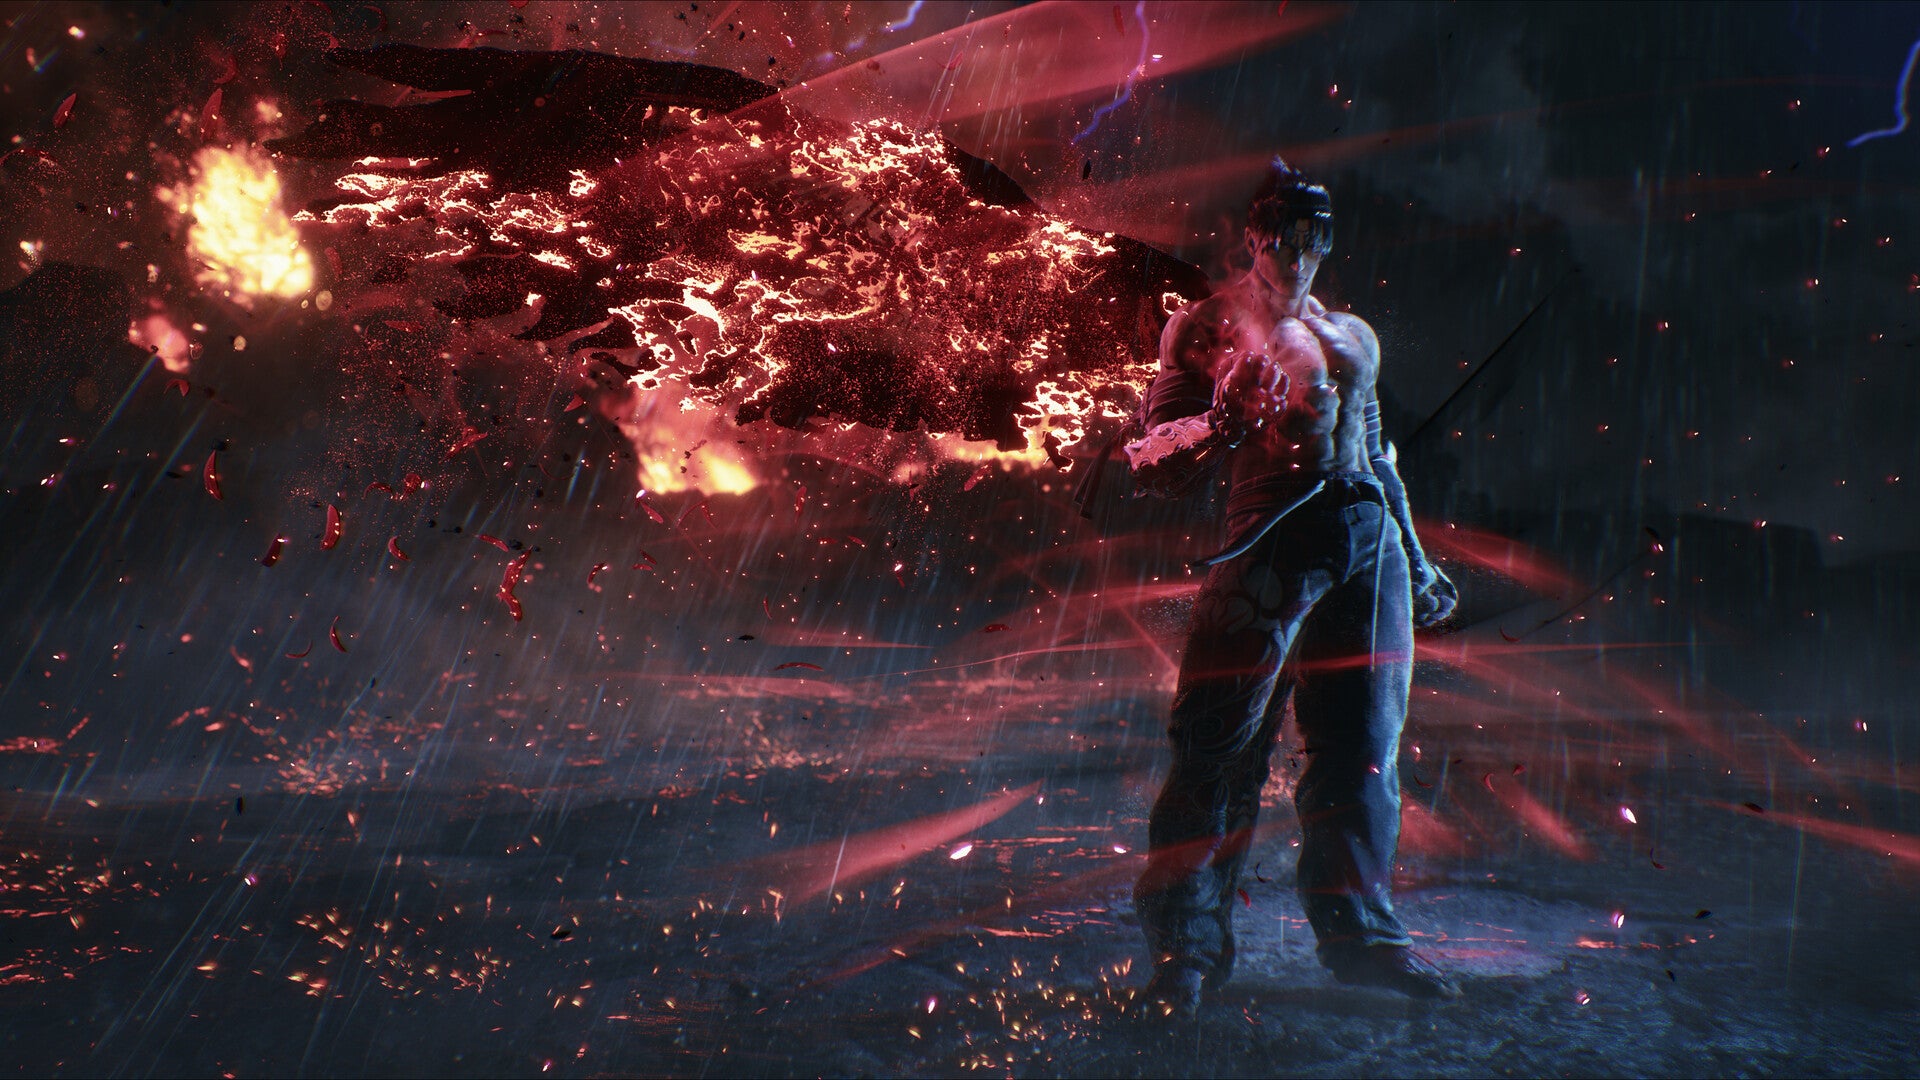 Tekken 8 Review (PS5)